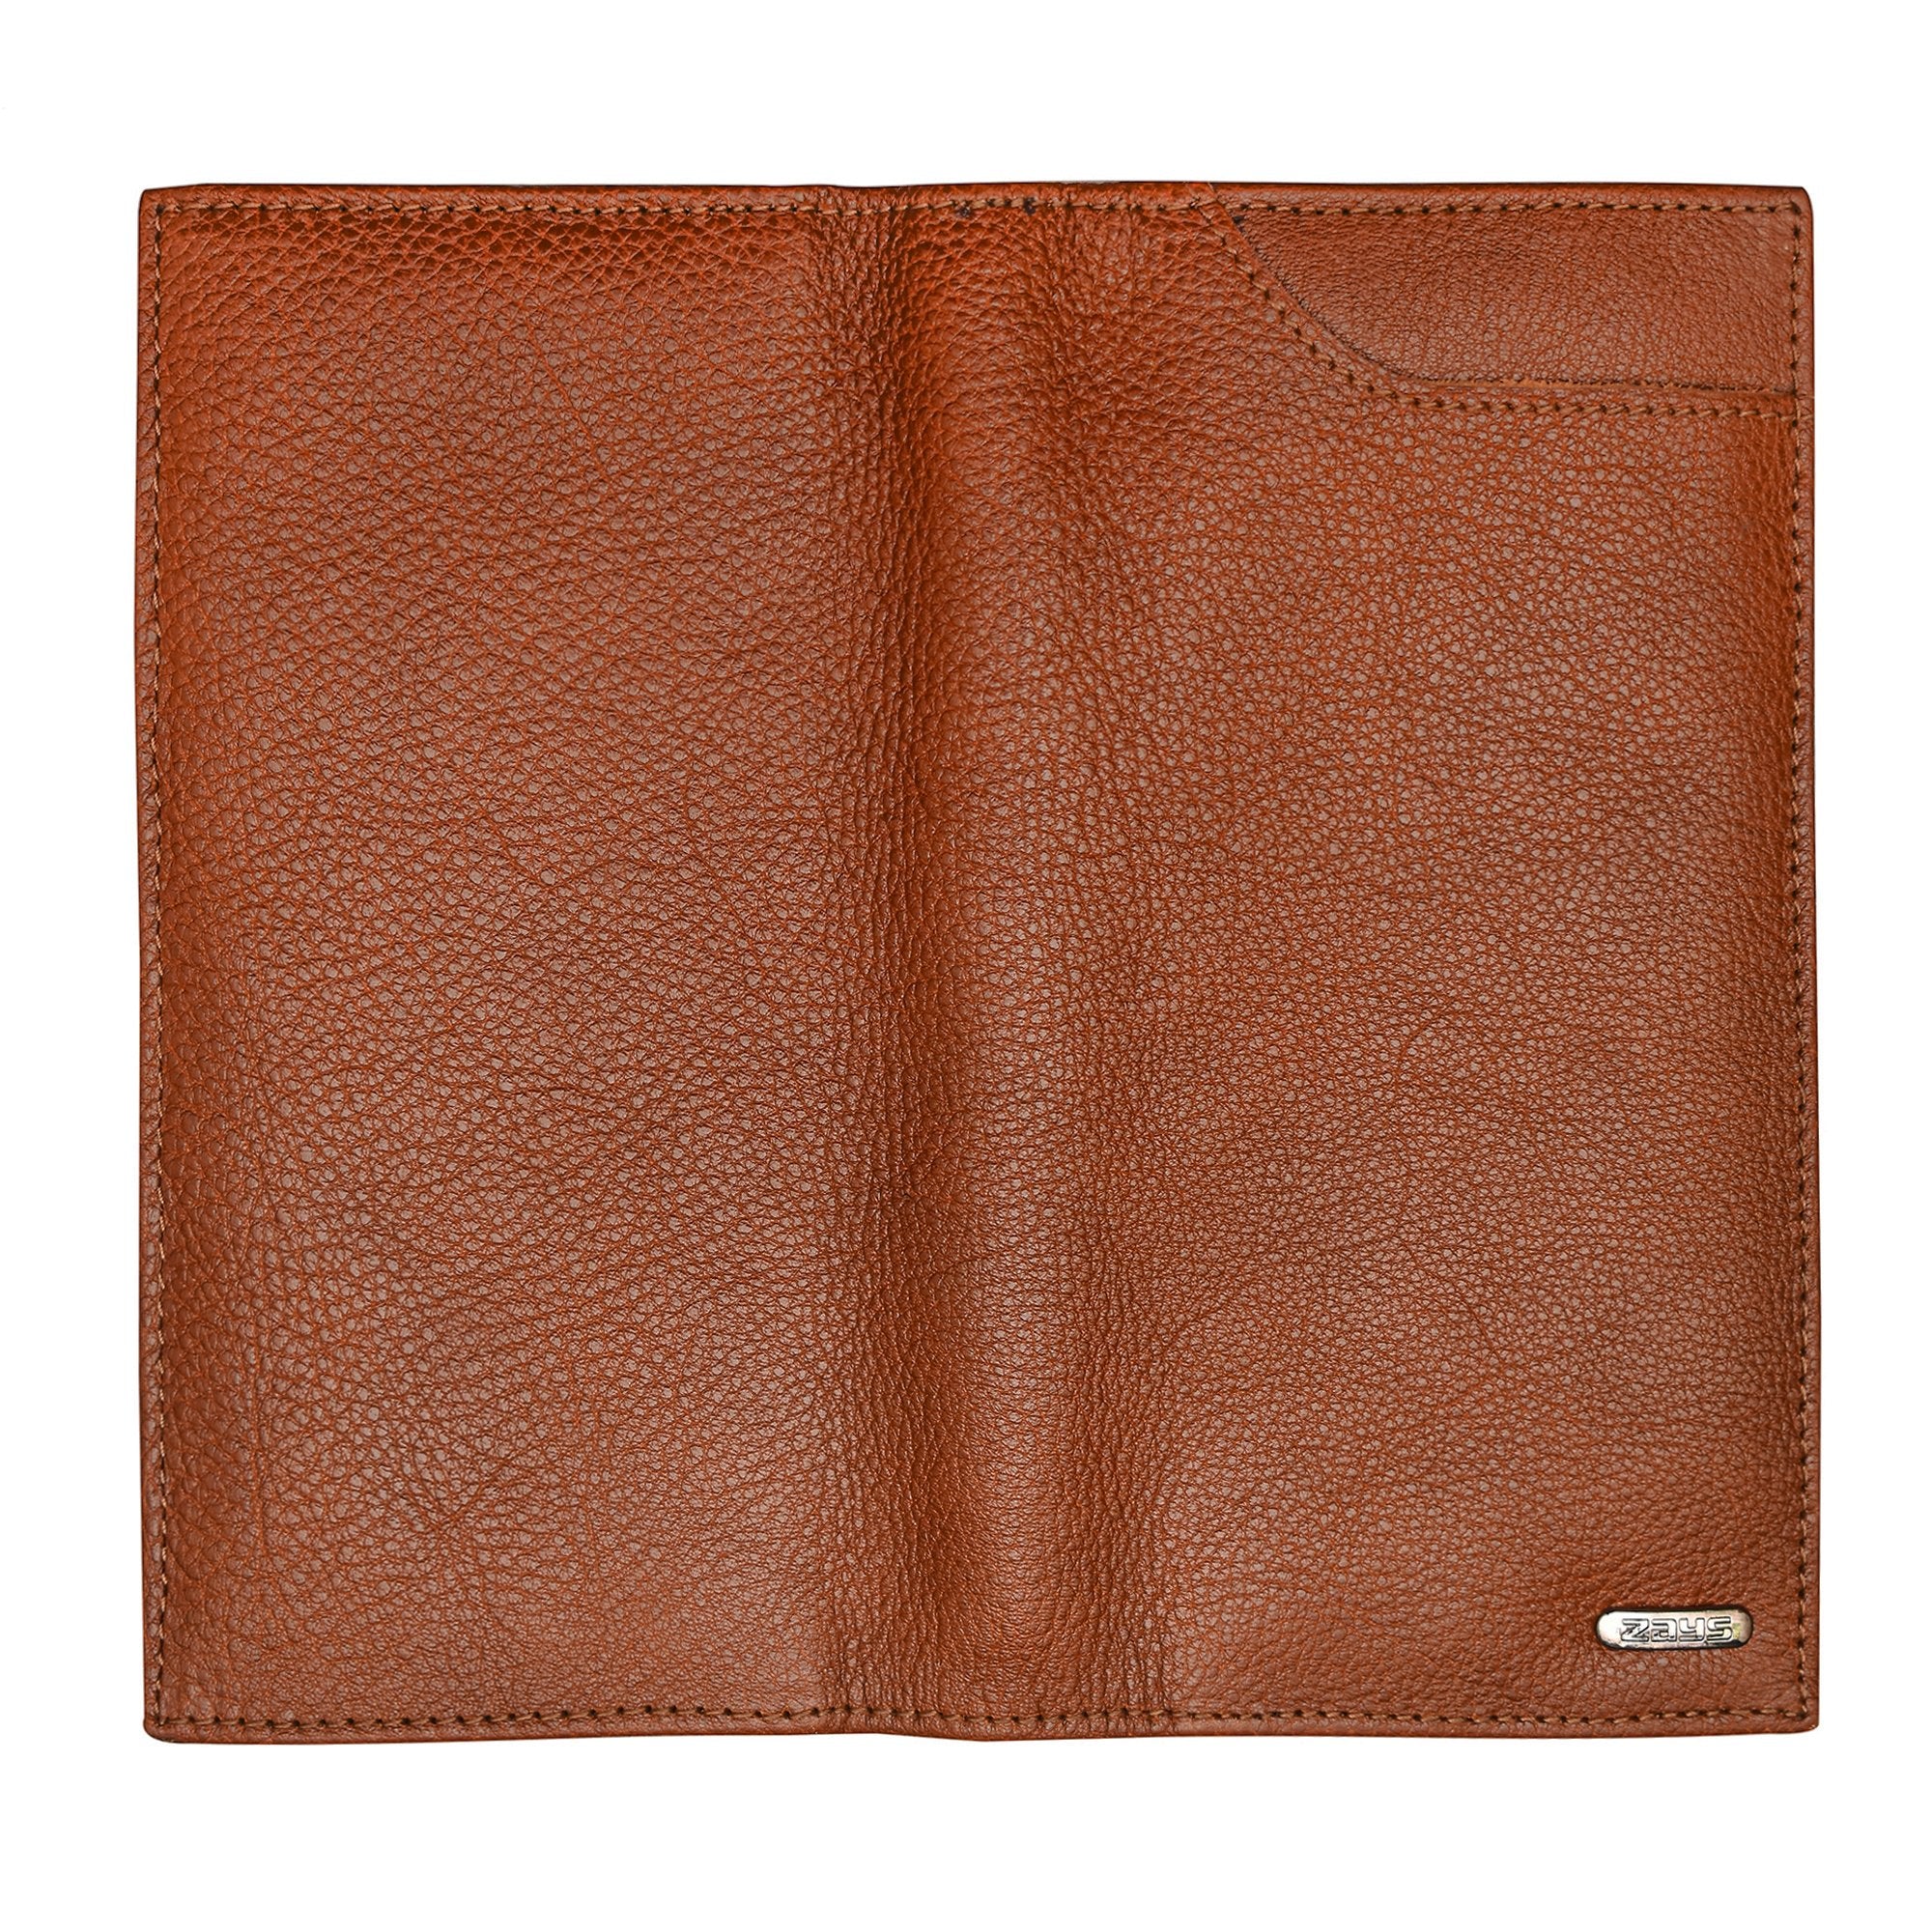 Zays Heavy Grain Leather Long Wallet for Men - ZAYSWL08